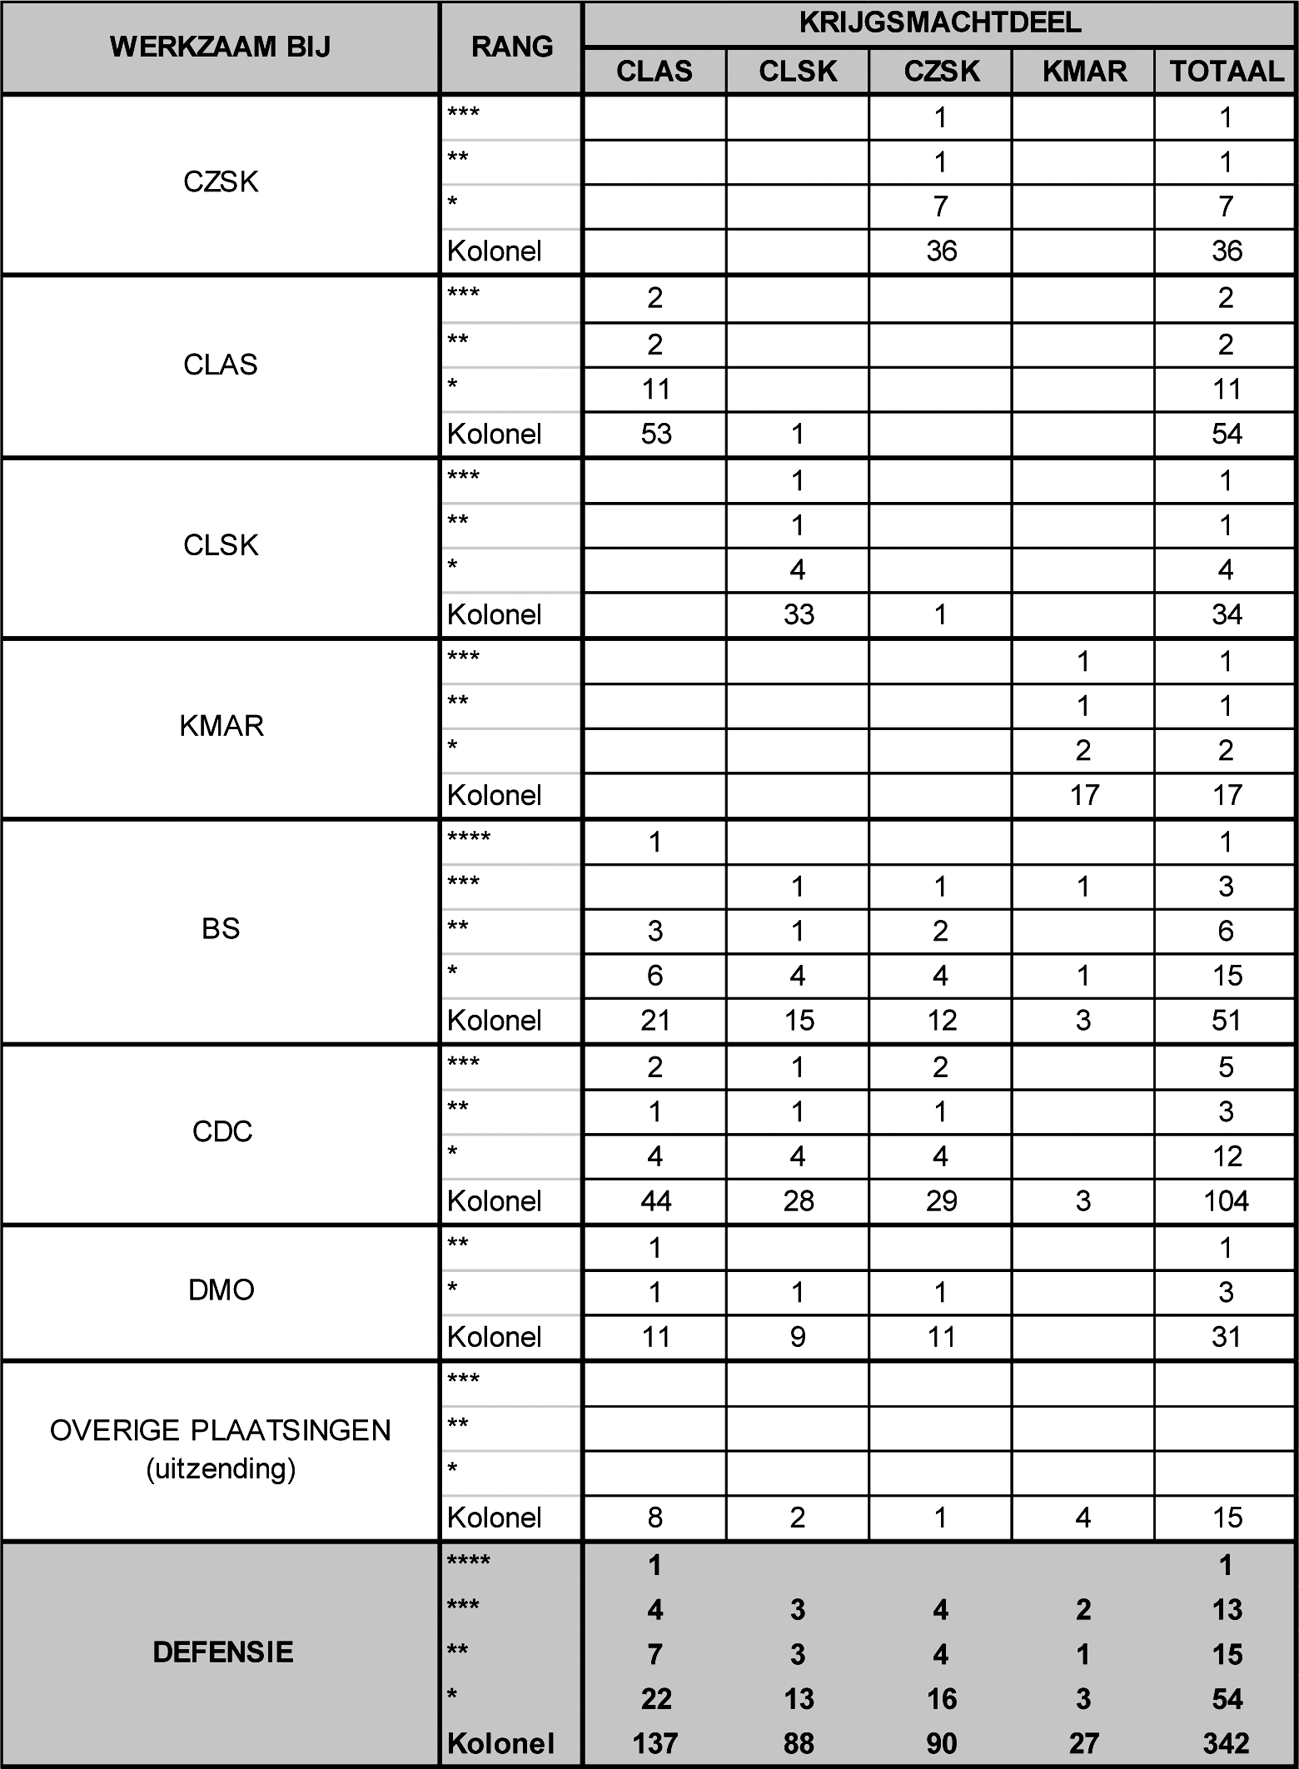 Tabel 13: Overzicht militaire top functionarissen per 1 januari 2013